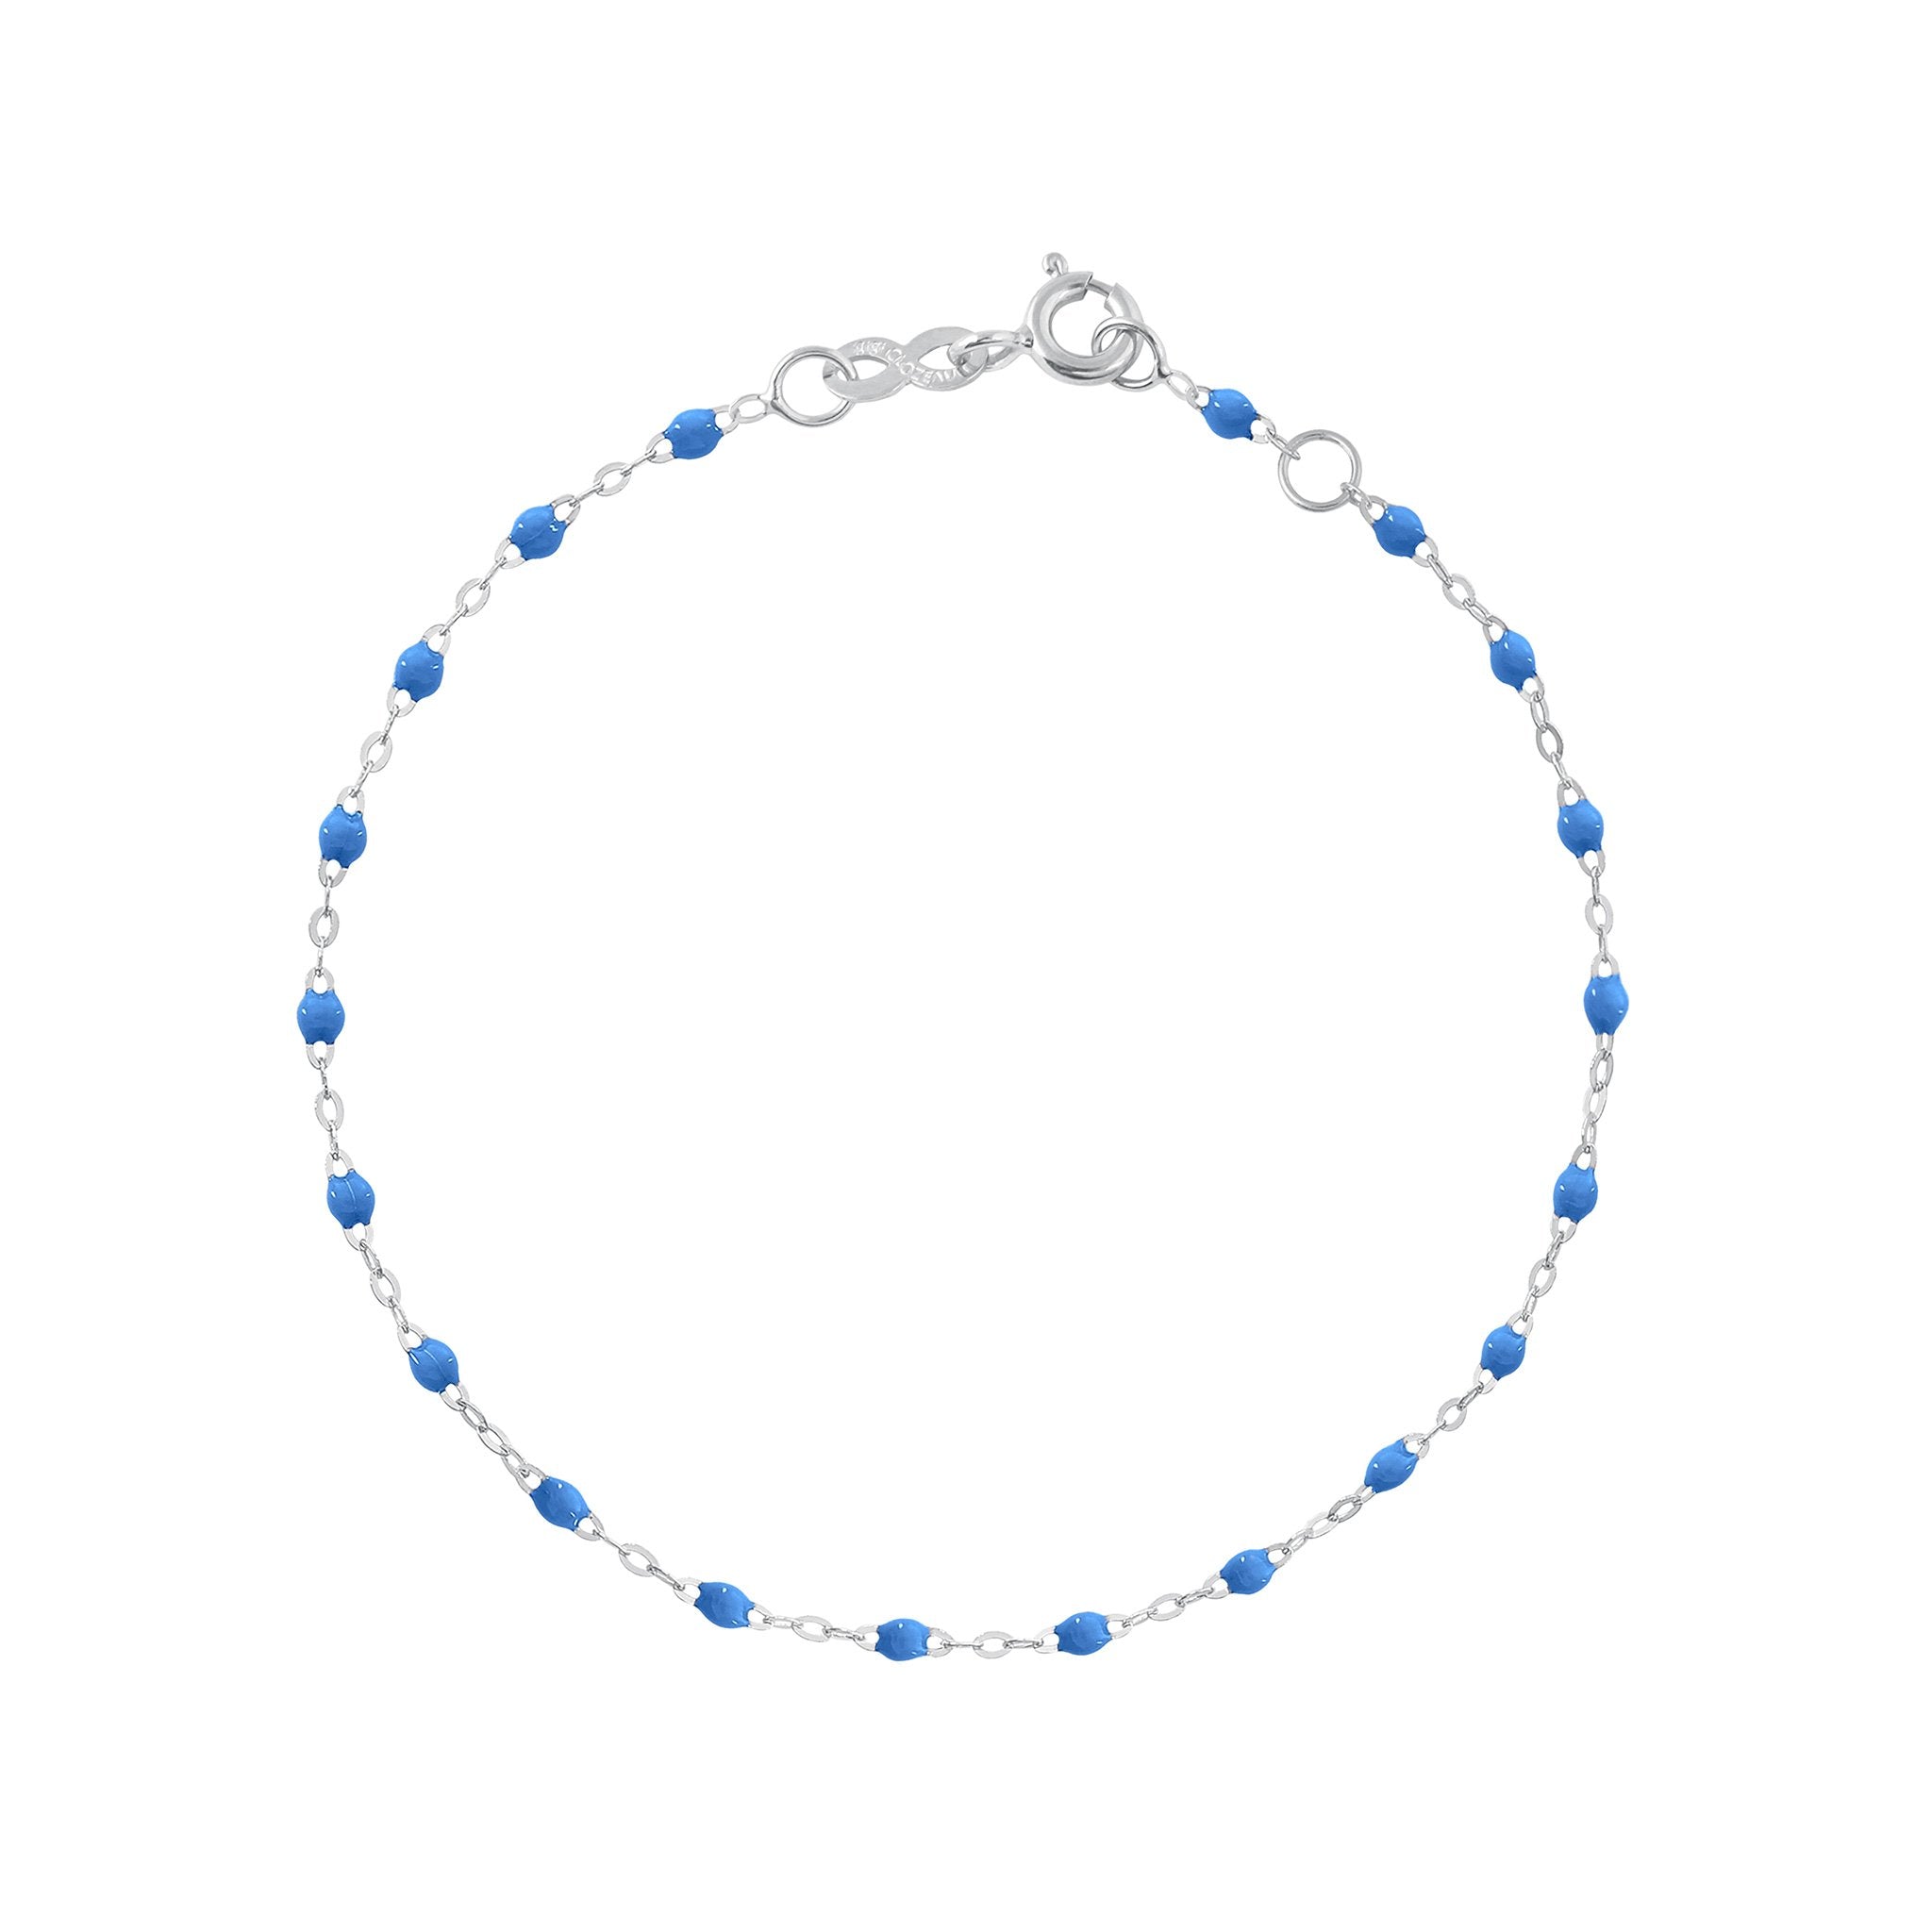 Bracelet bleu fluo Classique Gigi, or blanc, 18 cm classique gigi Référence :  b3gi001g0418xx -1